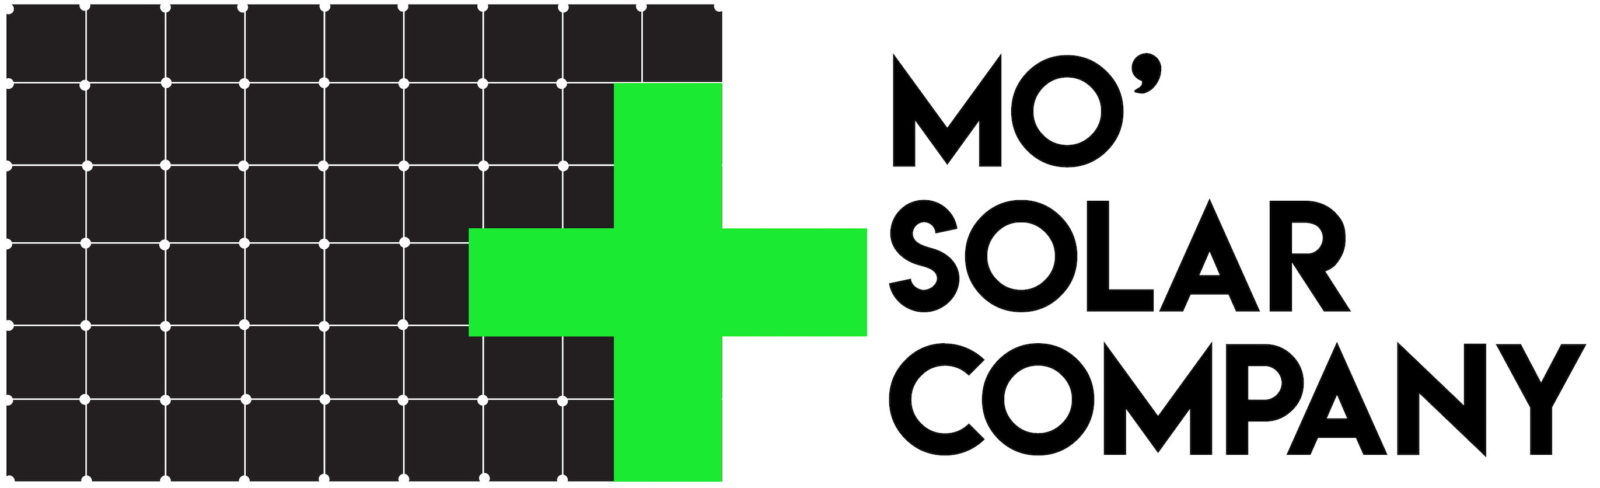 Mo Solar Company